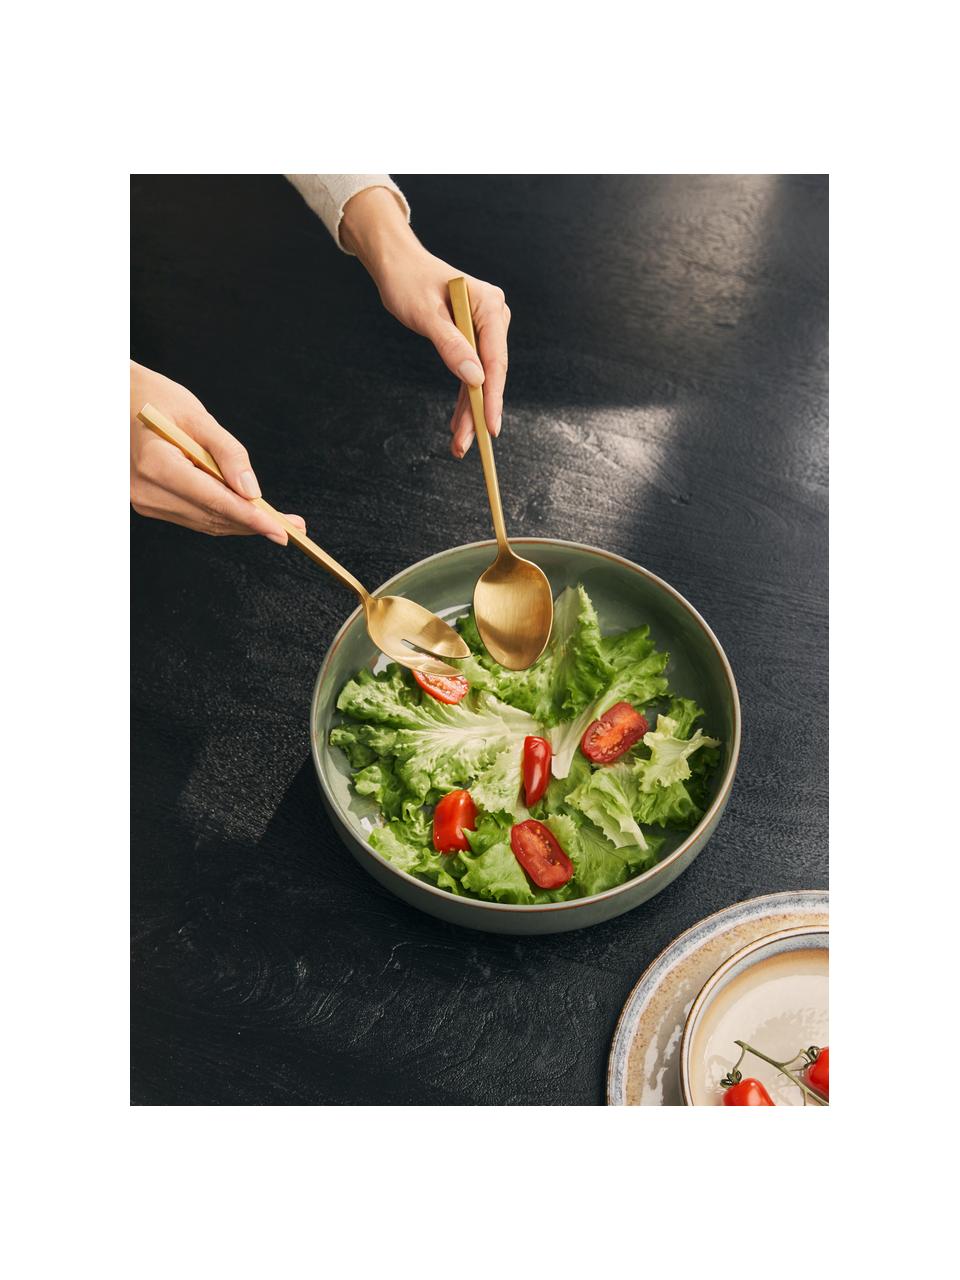 Goudkleurige saladebestekken Shine van edelstaal, set van 2, Edelstaal 18/10

Het bestek is gemaakt van roestvrij staal. Het is daardoor duurzaam, roest niet en is bestand tegen bacteriën., Goudkleurig, geborsteld, L 24 cm